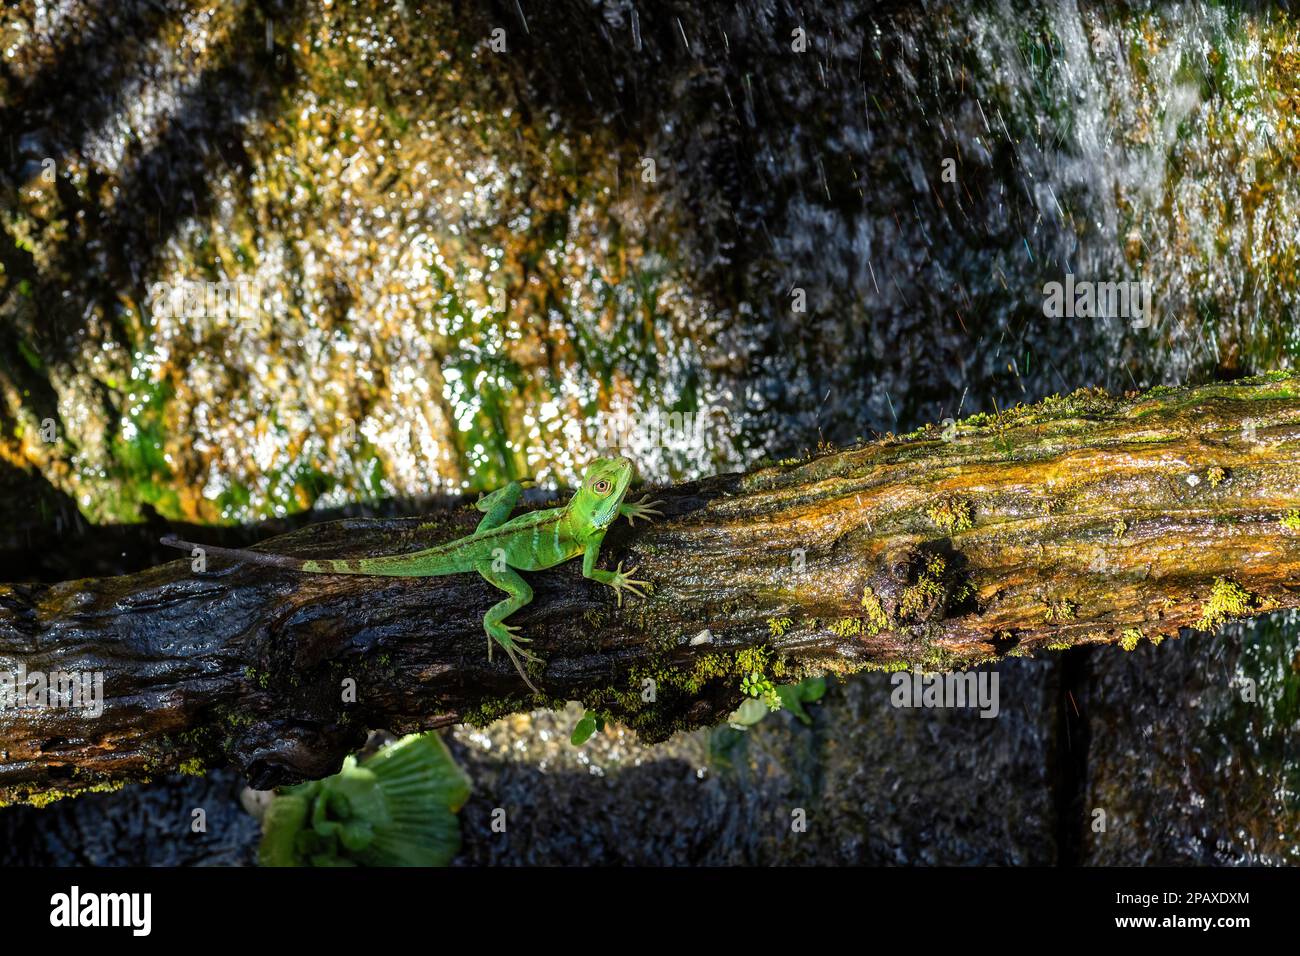 Drago della foresta gigante - Gonocephalus grandis, bella grande verde agama dalle foreste del sud-est asiatico, Malesia. Foto Stock